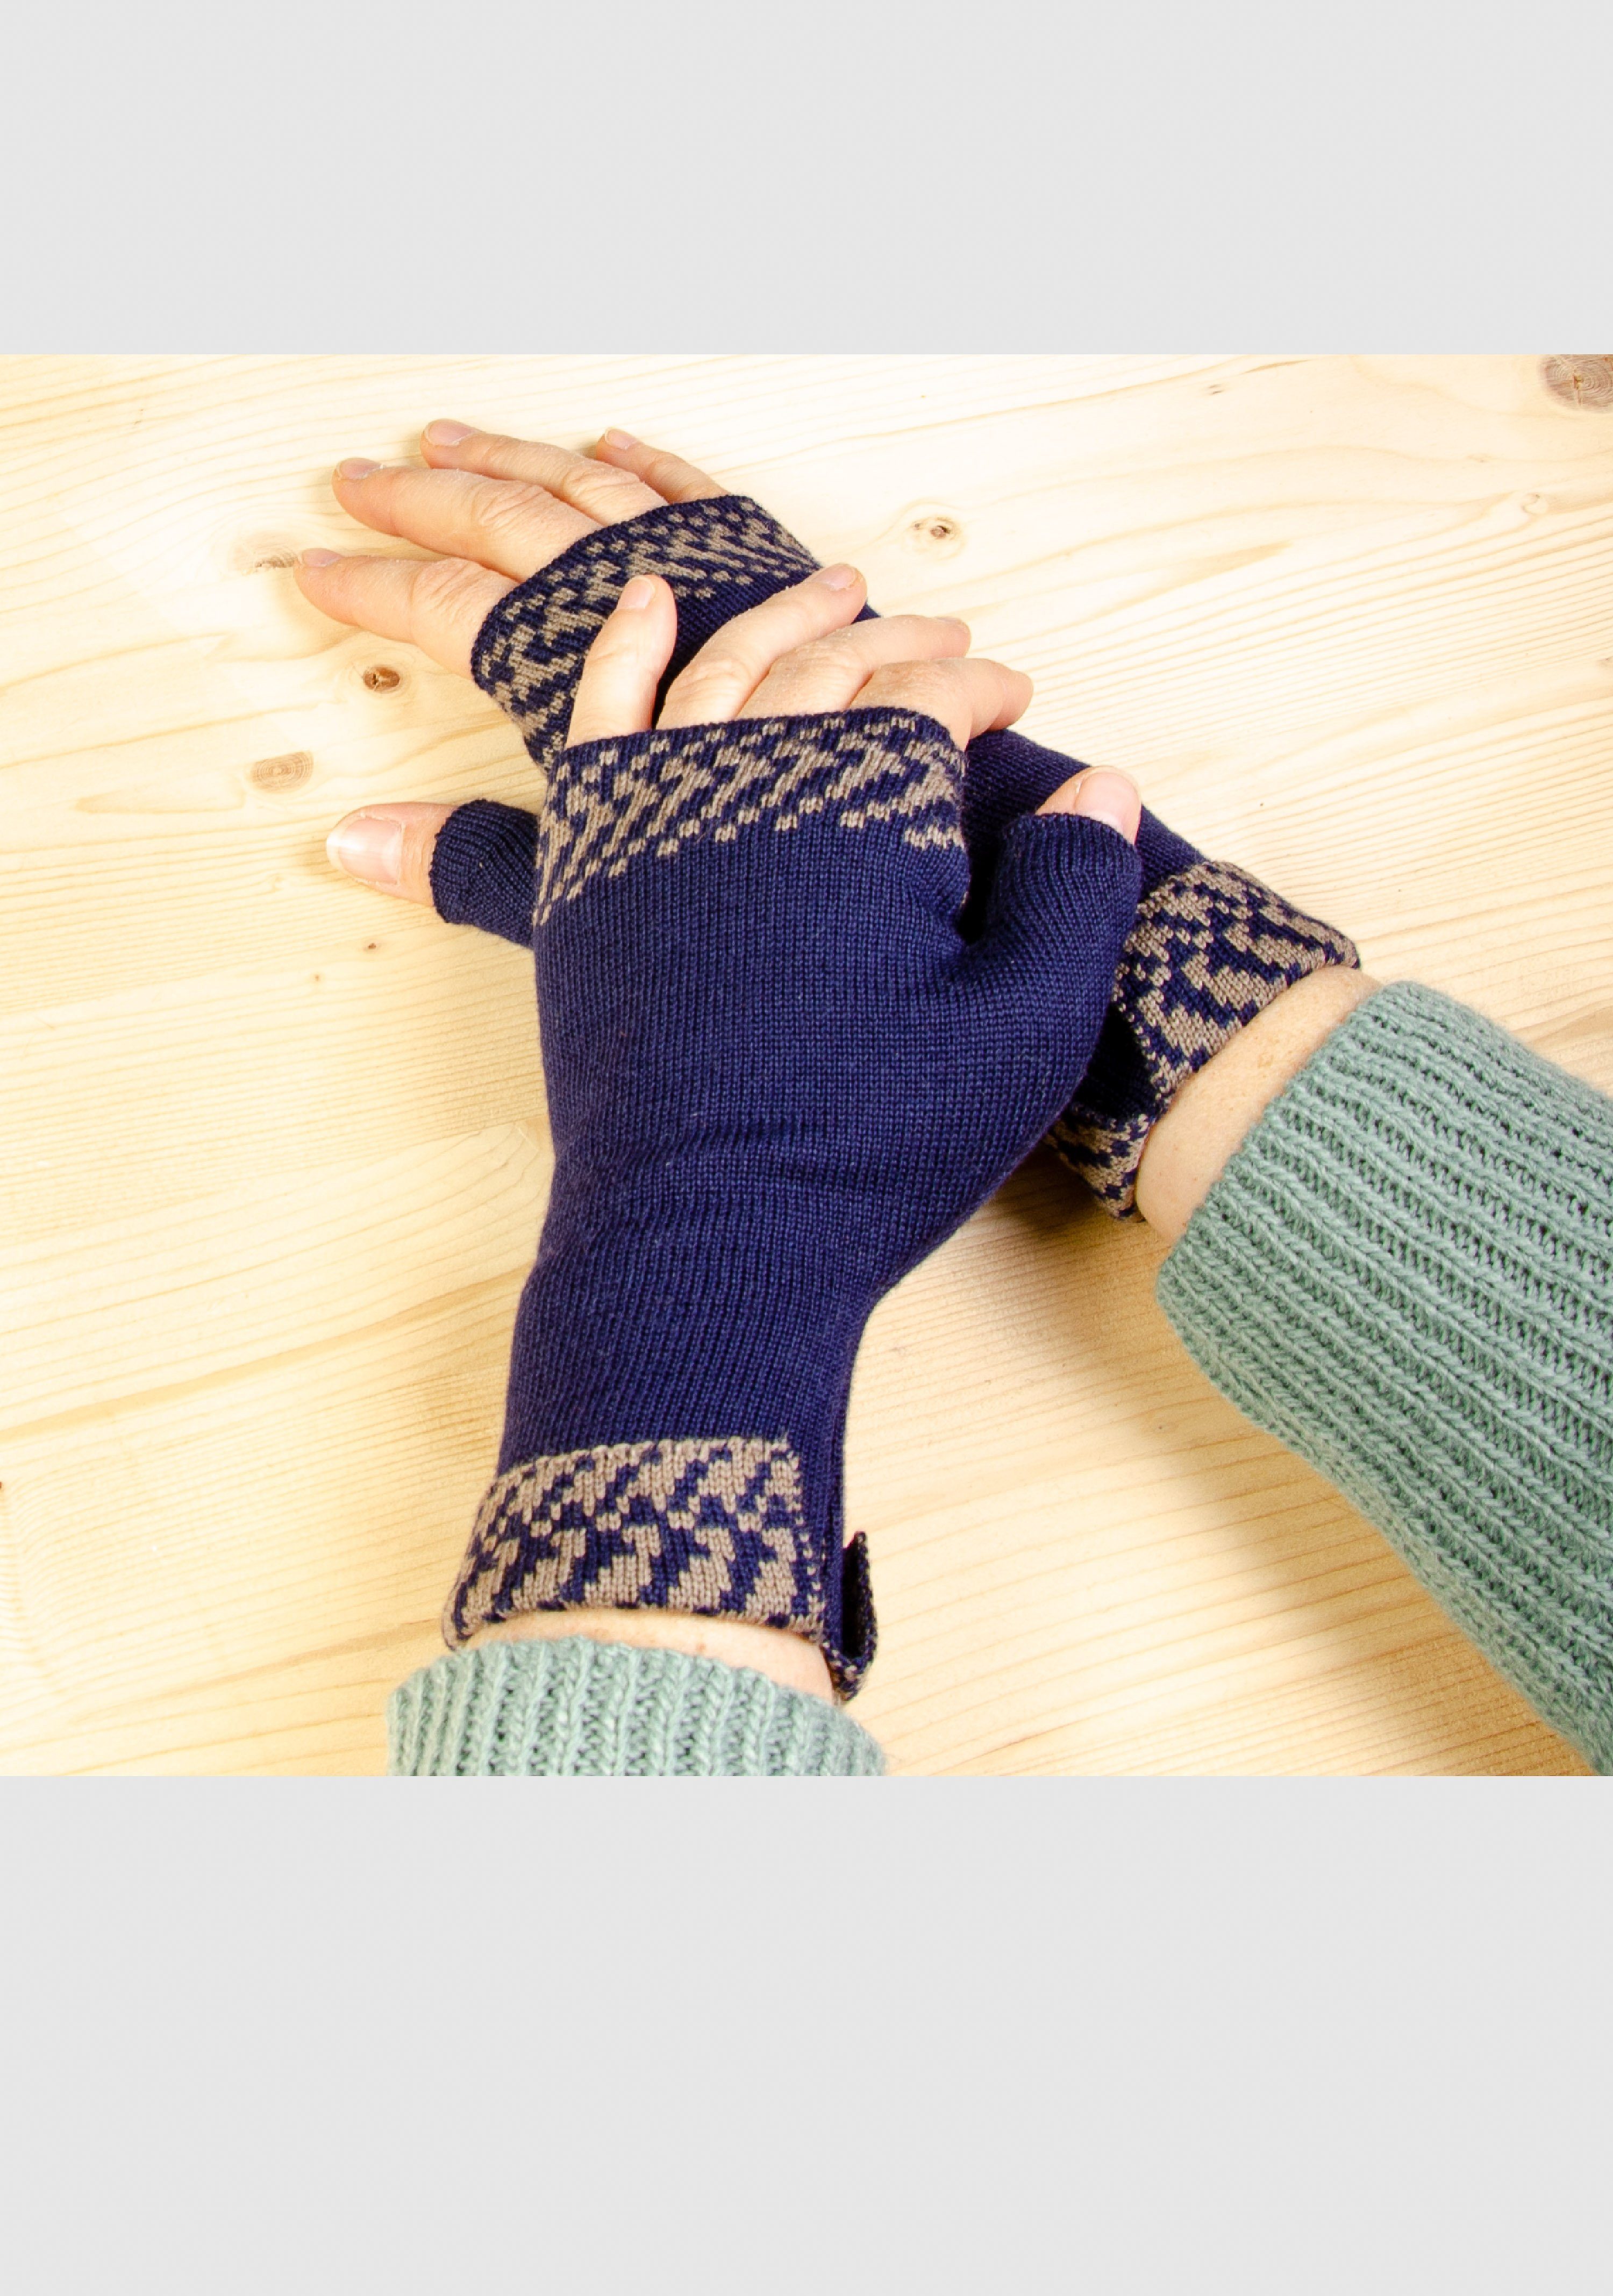 LANARTO slow fashion Strickhandschuhe Merino Handwärmer Pixel in vielen Farben aus 100% Merino extrasoft nacht_taupe